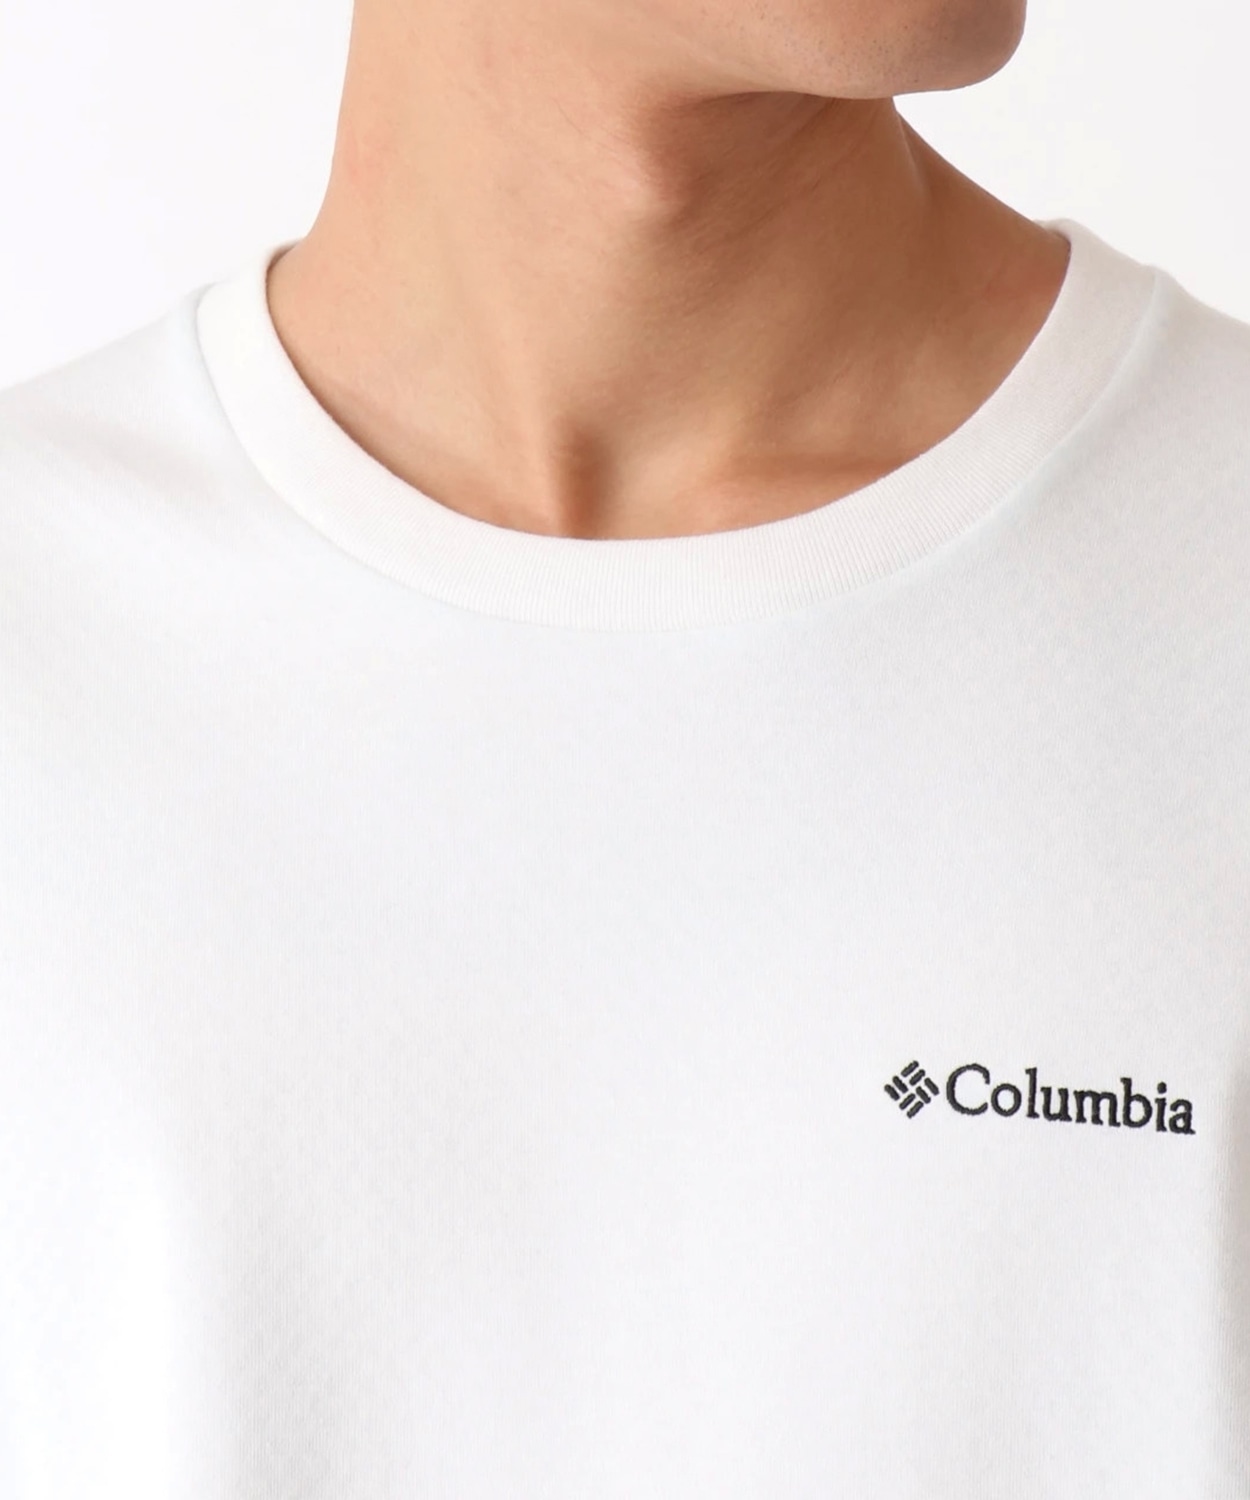 低廉 Columbia コロンビア フォークストリームブラッシュオムニフリーズゼロショートスリーブクルー PM3926 Tシャツ 半袖 冷却機能  willekeprins.nl